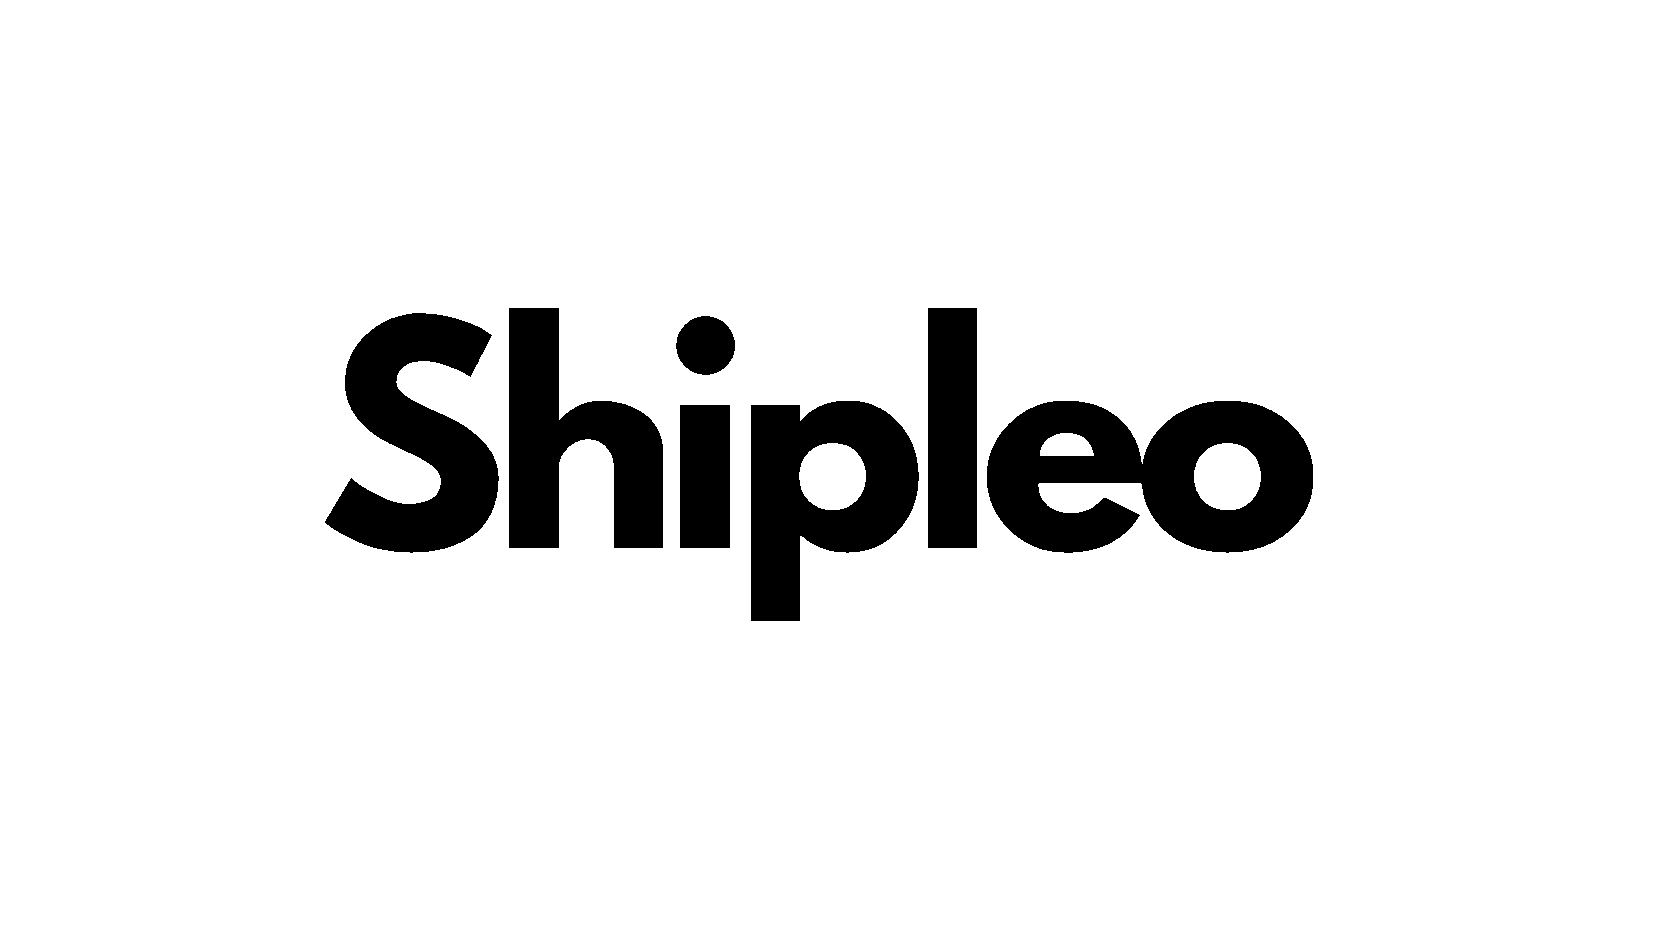  SHIPLEO 